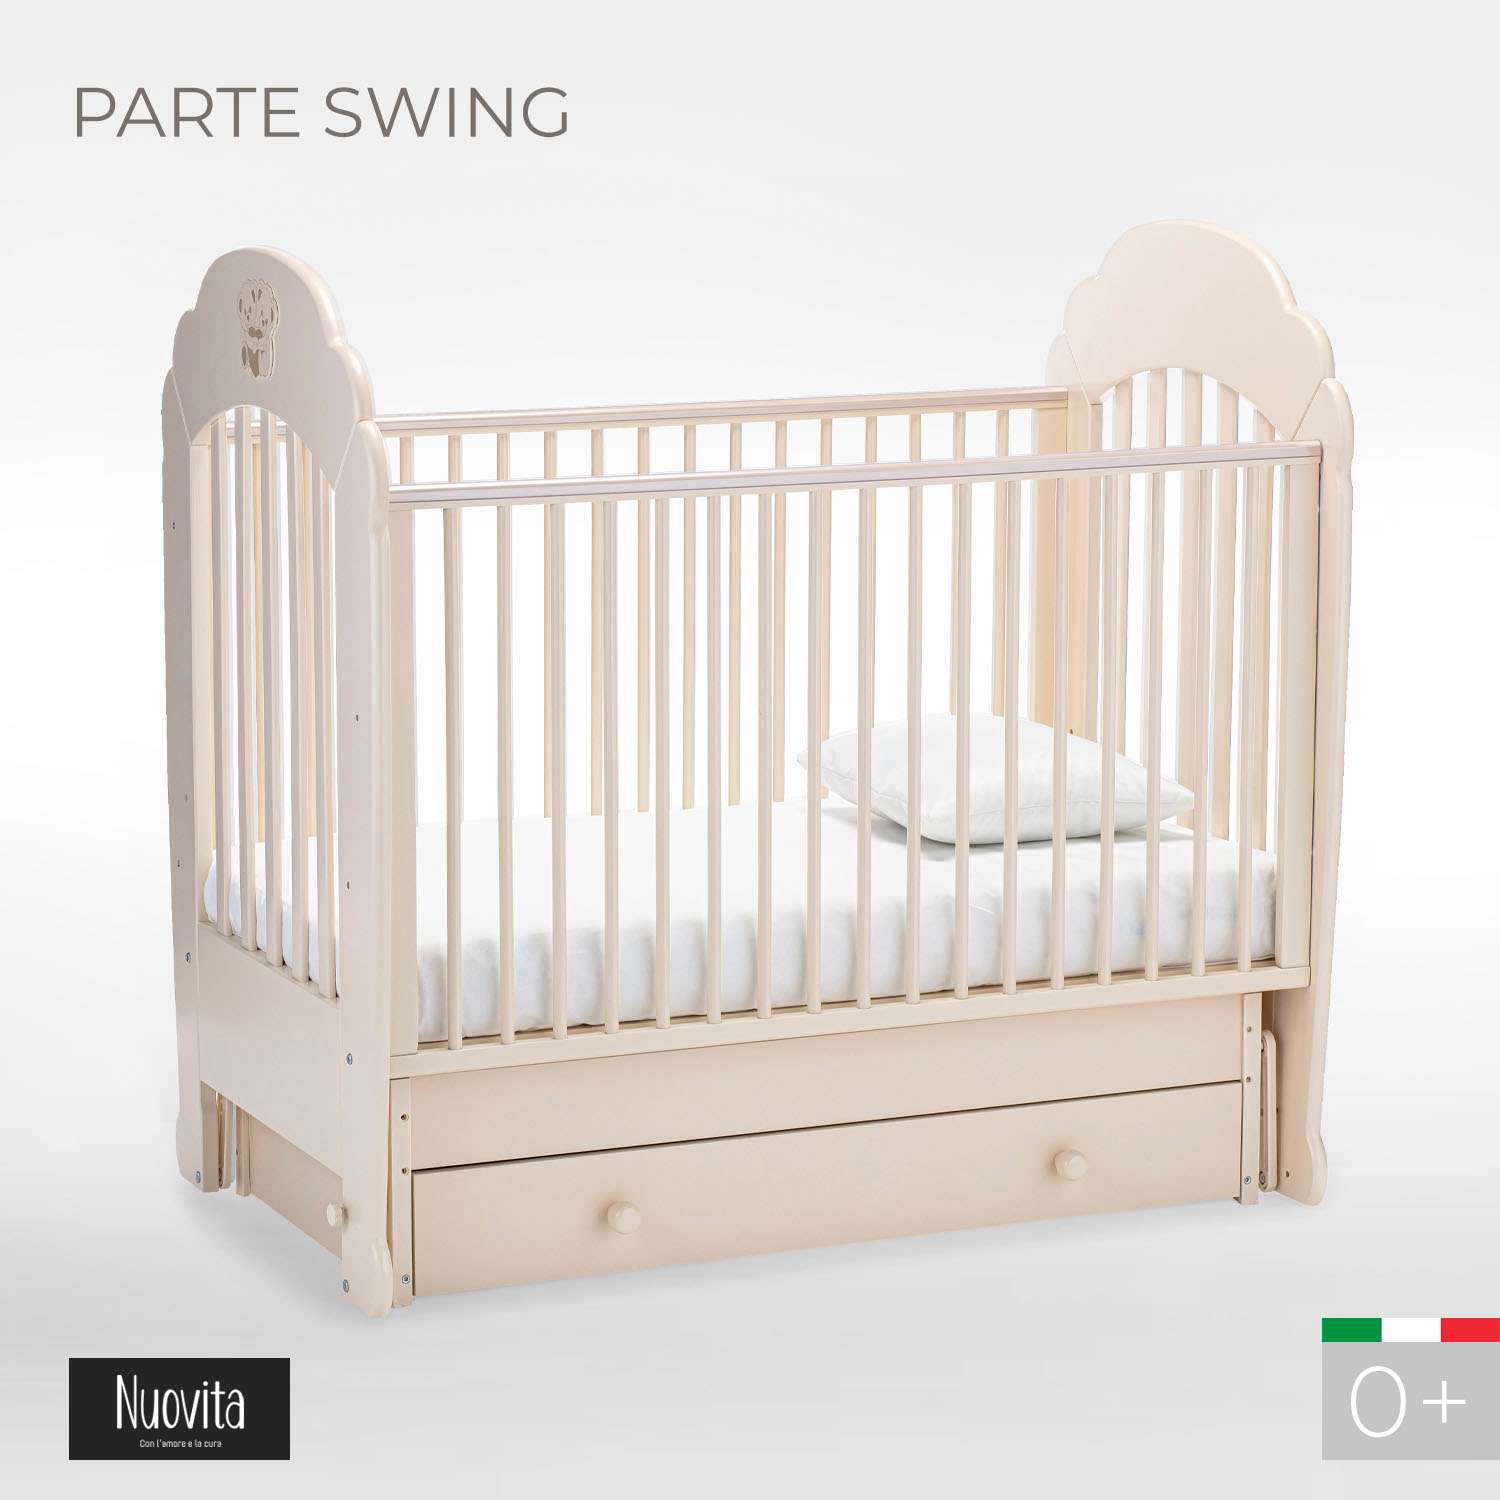 Детская кроватка Nuovita Parte Swing прямоугольная, поперечный маятник (слоновая кость) - фото 2